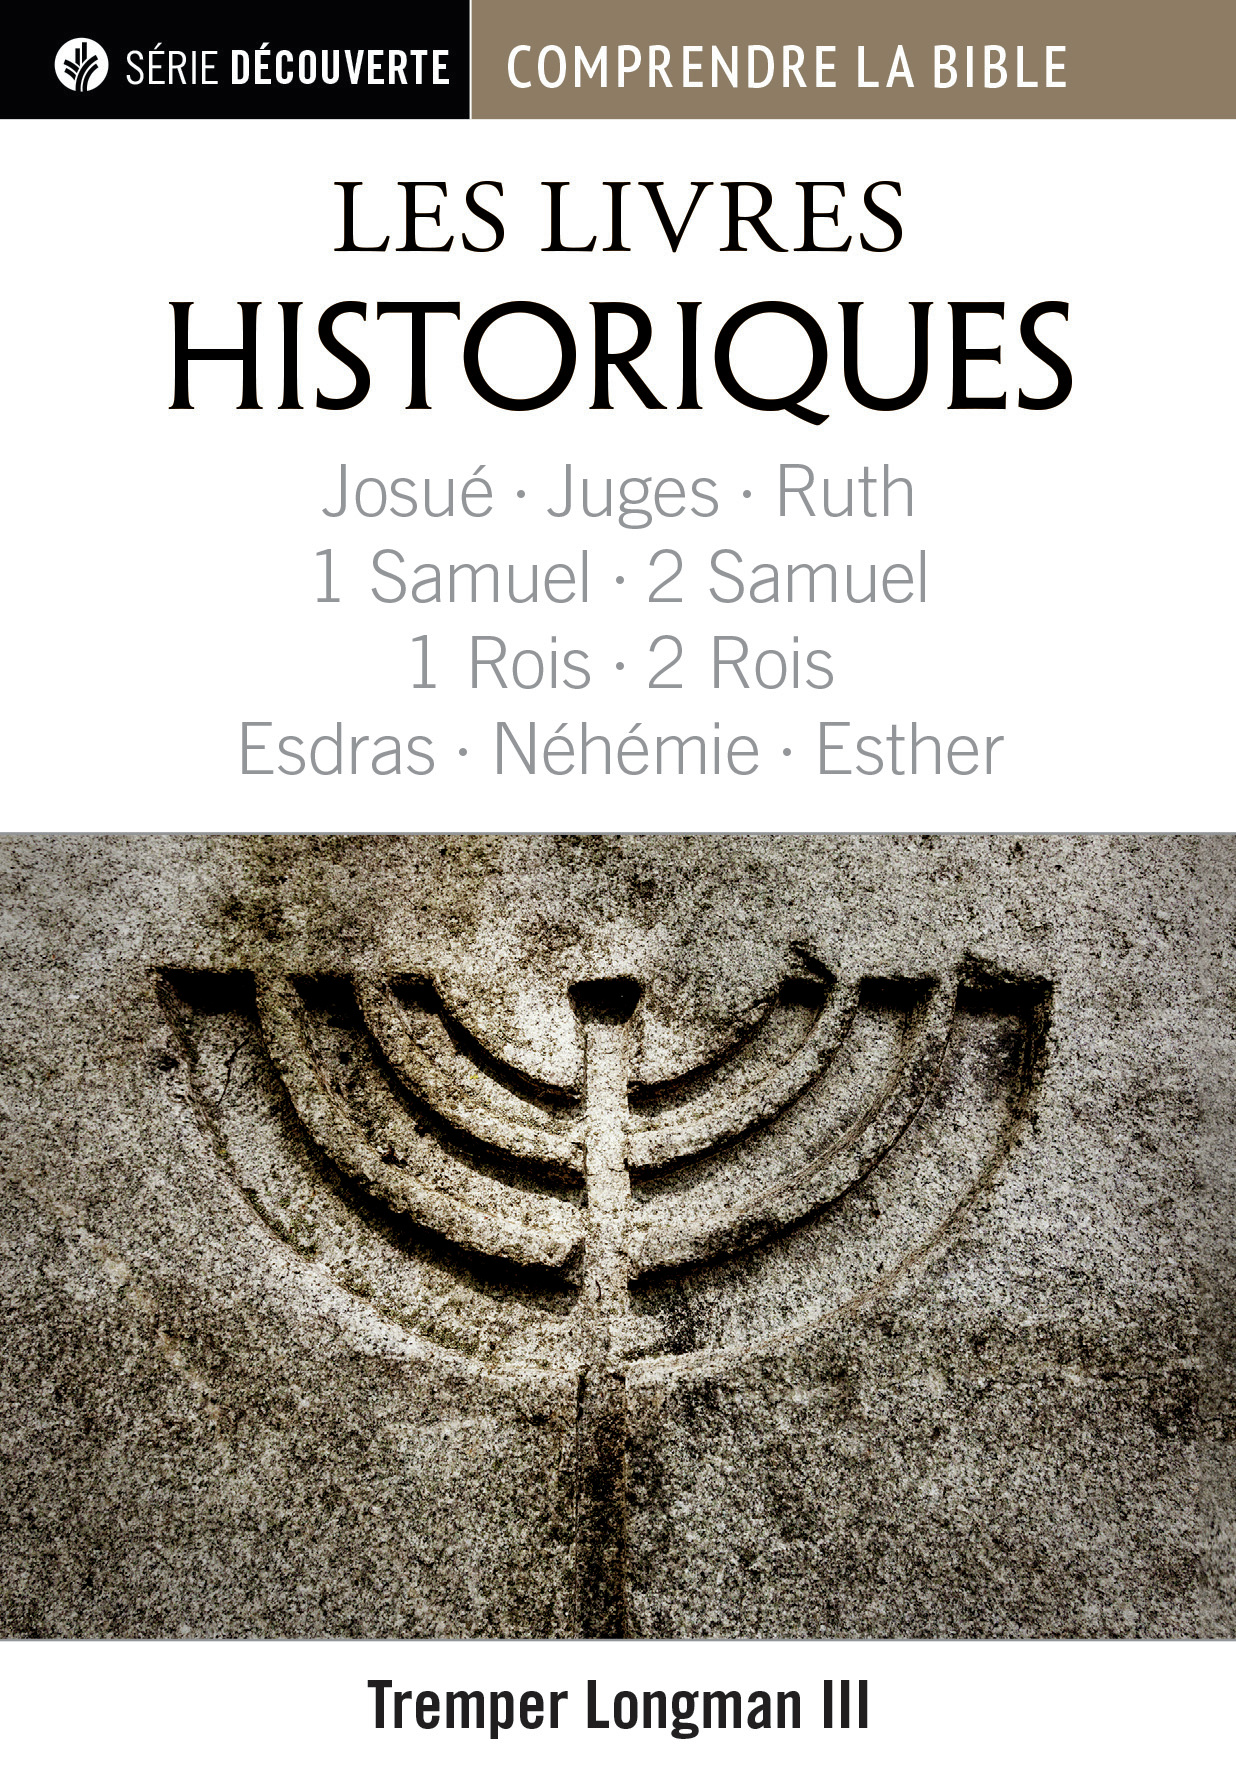 Livres historiques (Les) - Josué, Juges, Ruth, 1 & 2 Samuel, 1 & 2 Rois, Esdras, Néhémie et Esther [brochure NPQ série découvert